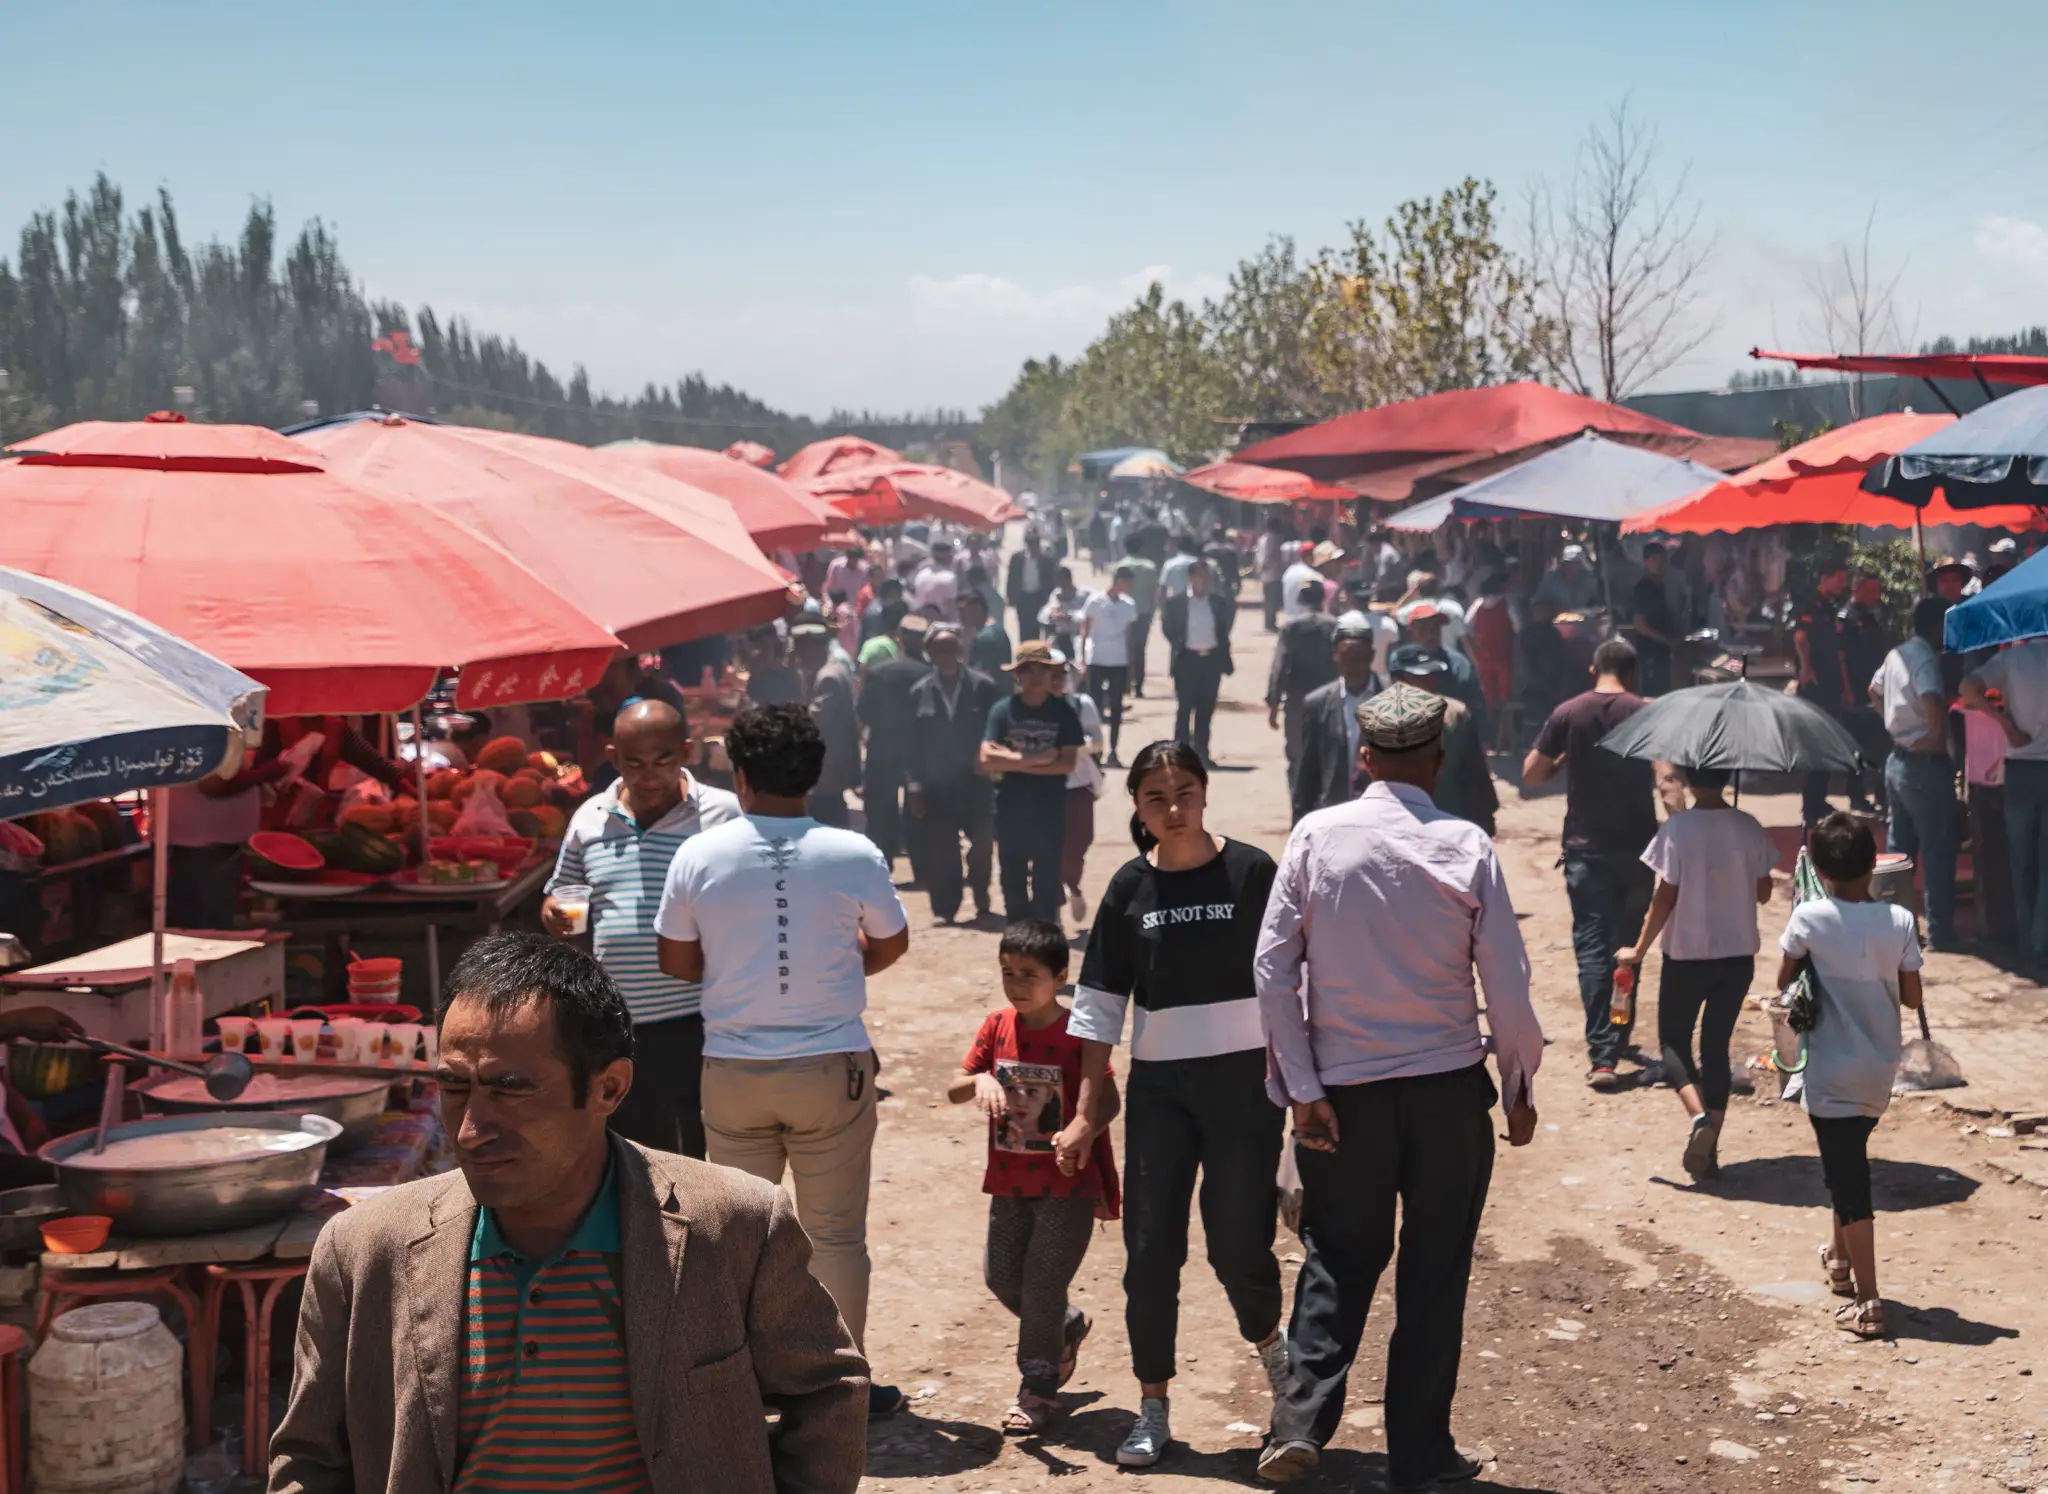 A market in Kashgar, Xinjiang